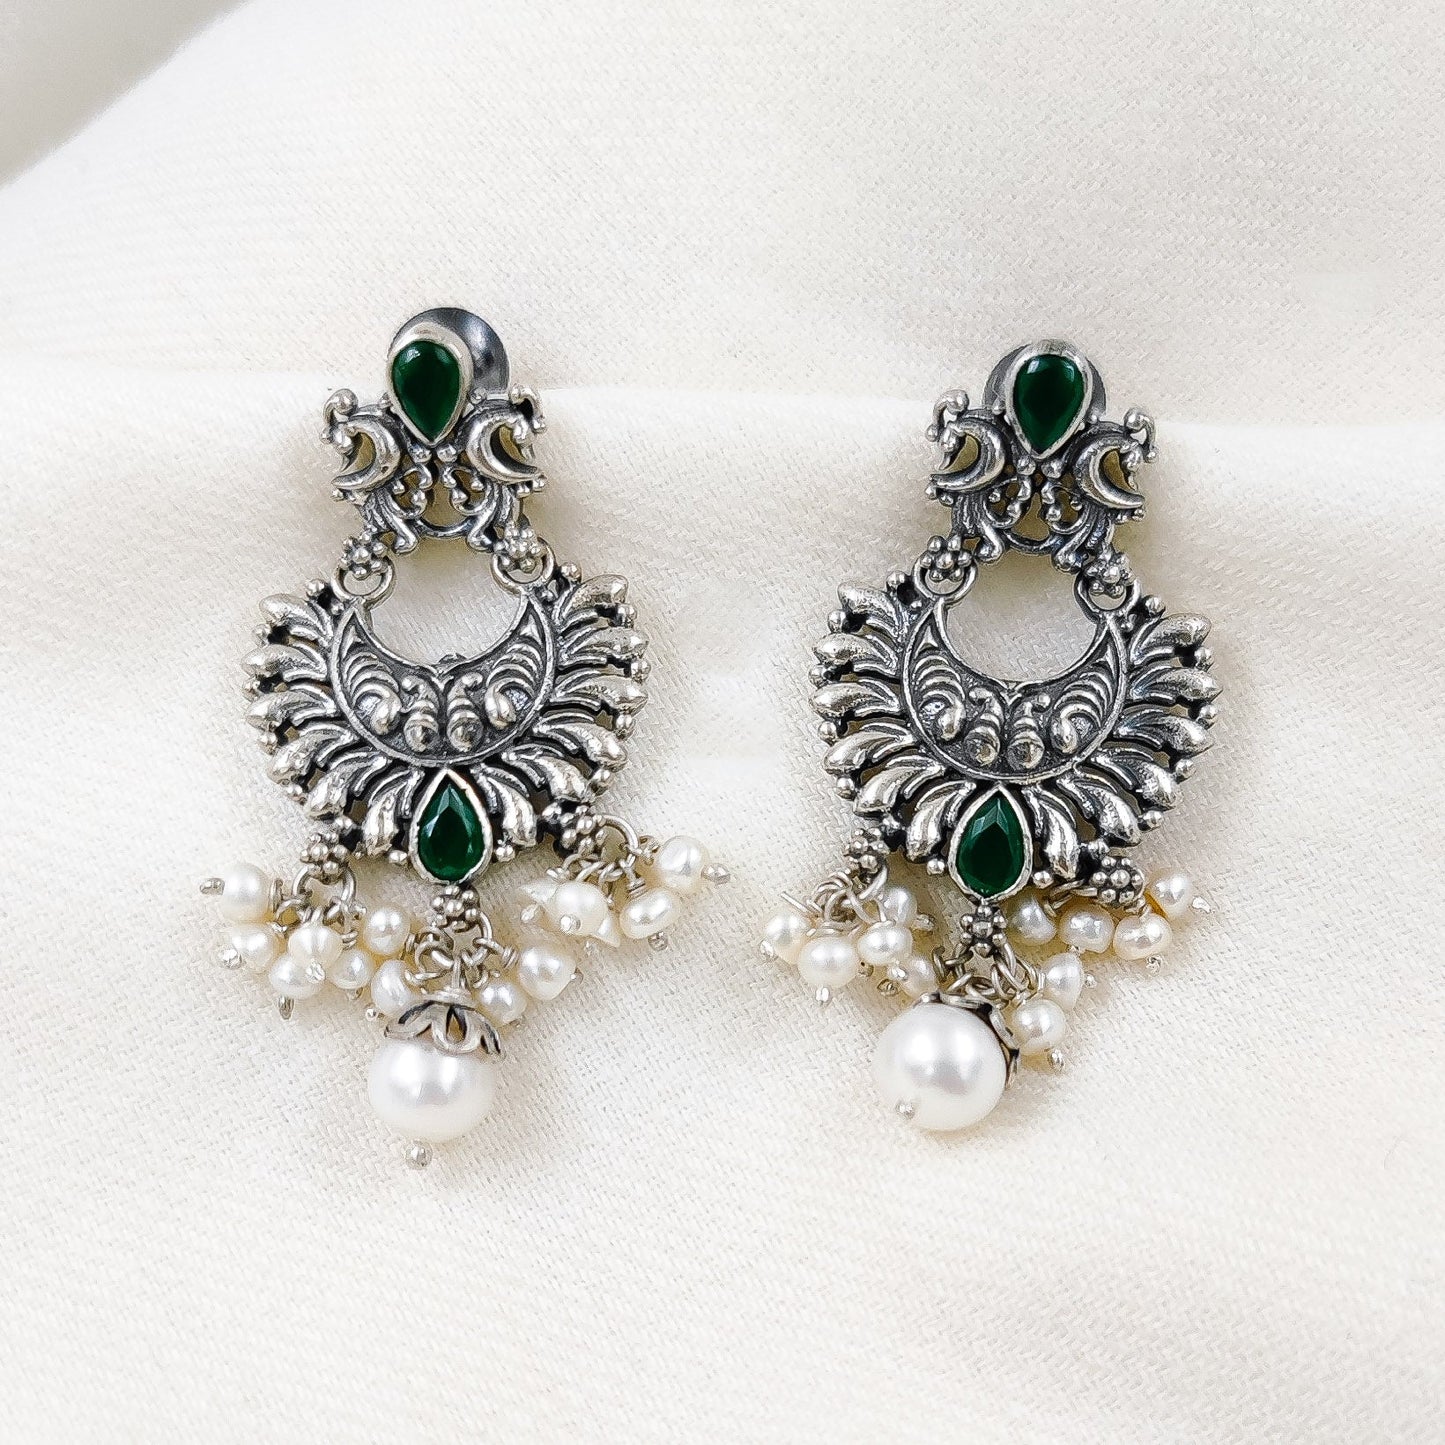 Silver Jewelry Earrings by Jauhri 92.5 Silver - Machh Khil Earrings